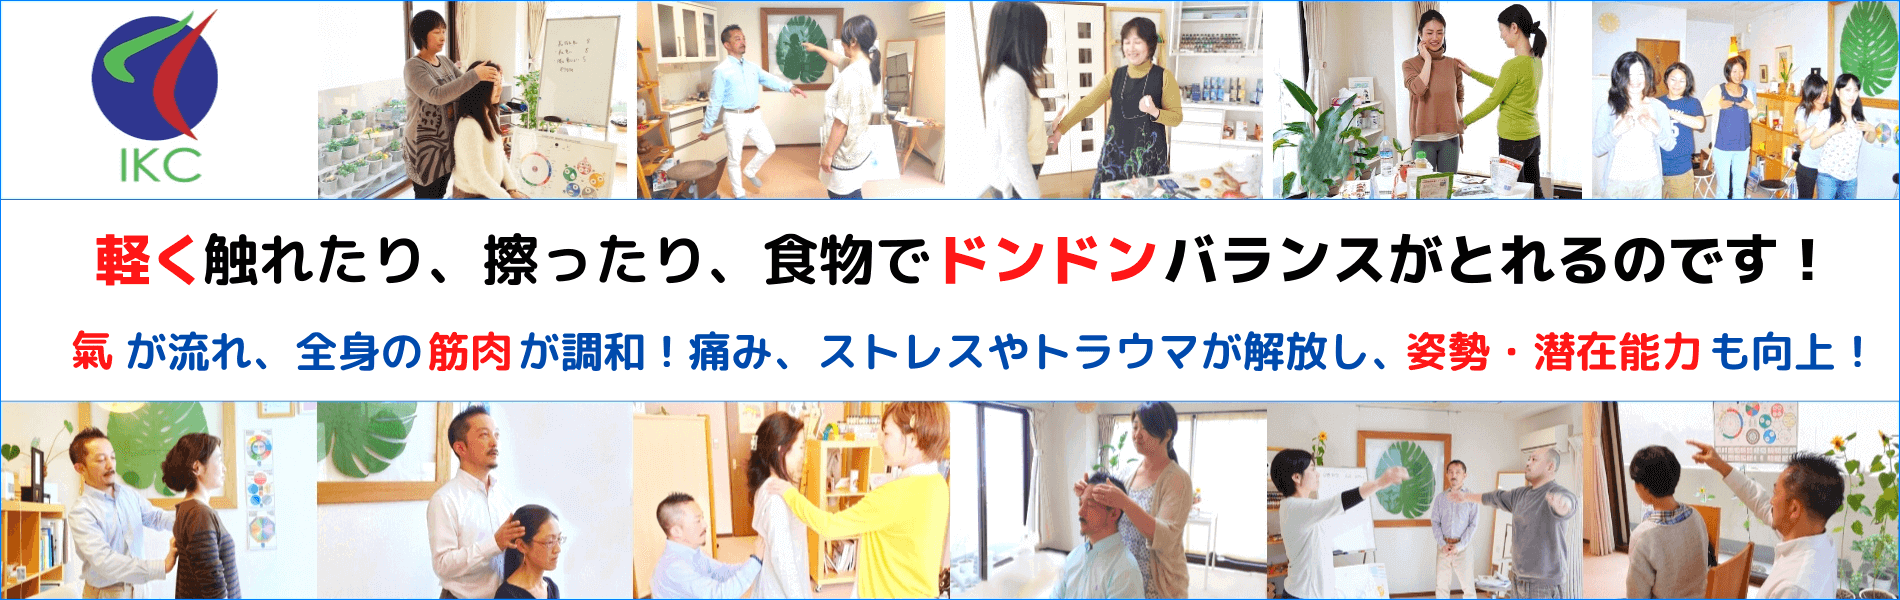 タッチフォーヘルス,キネシオロジー,筋肉反射テスト,touch for health,kinesiology,神奈川,東京